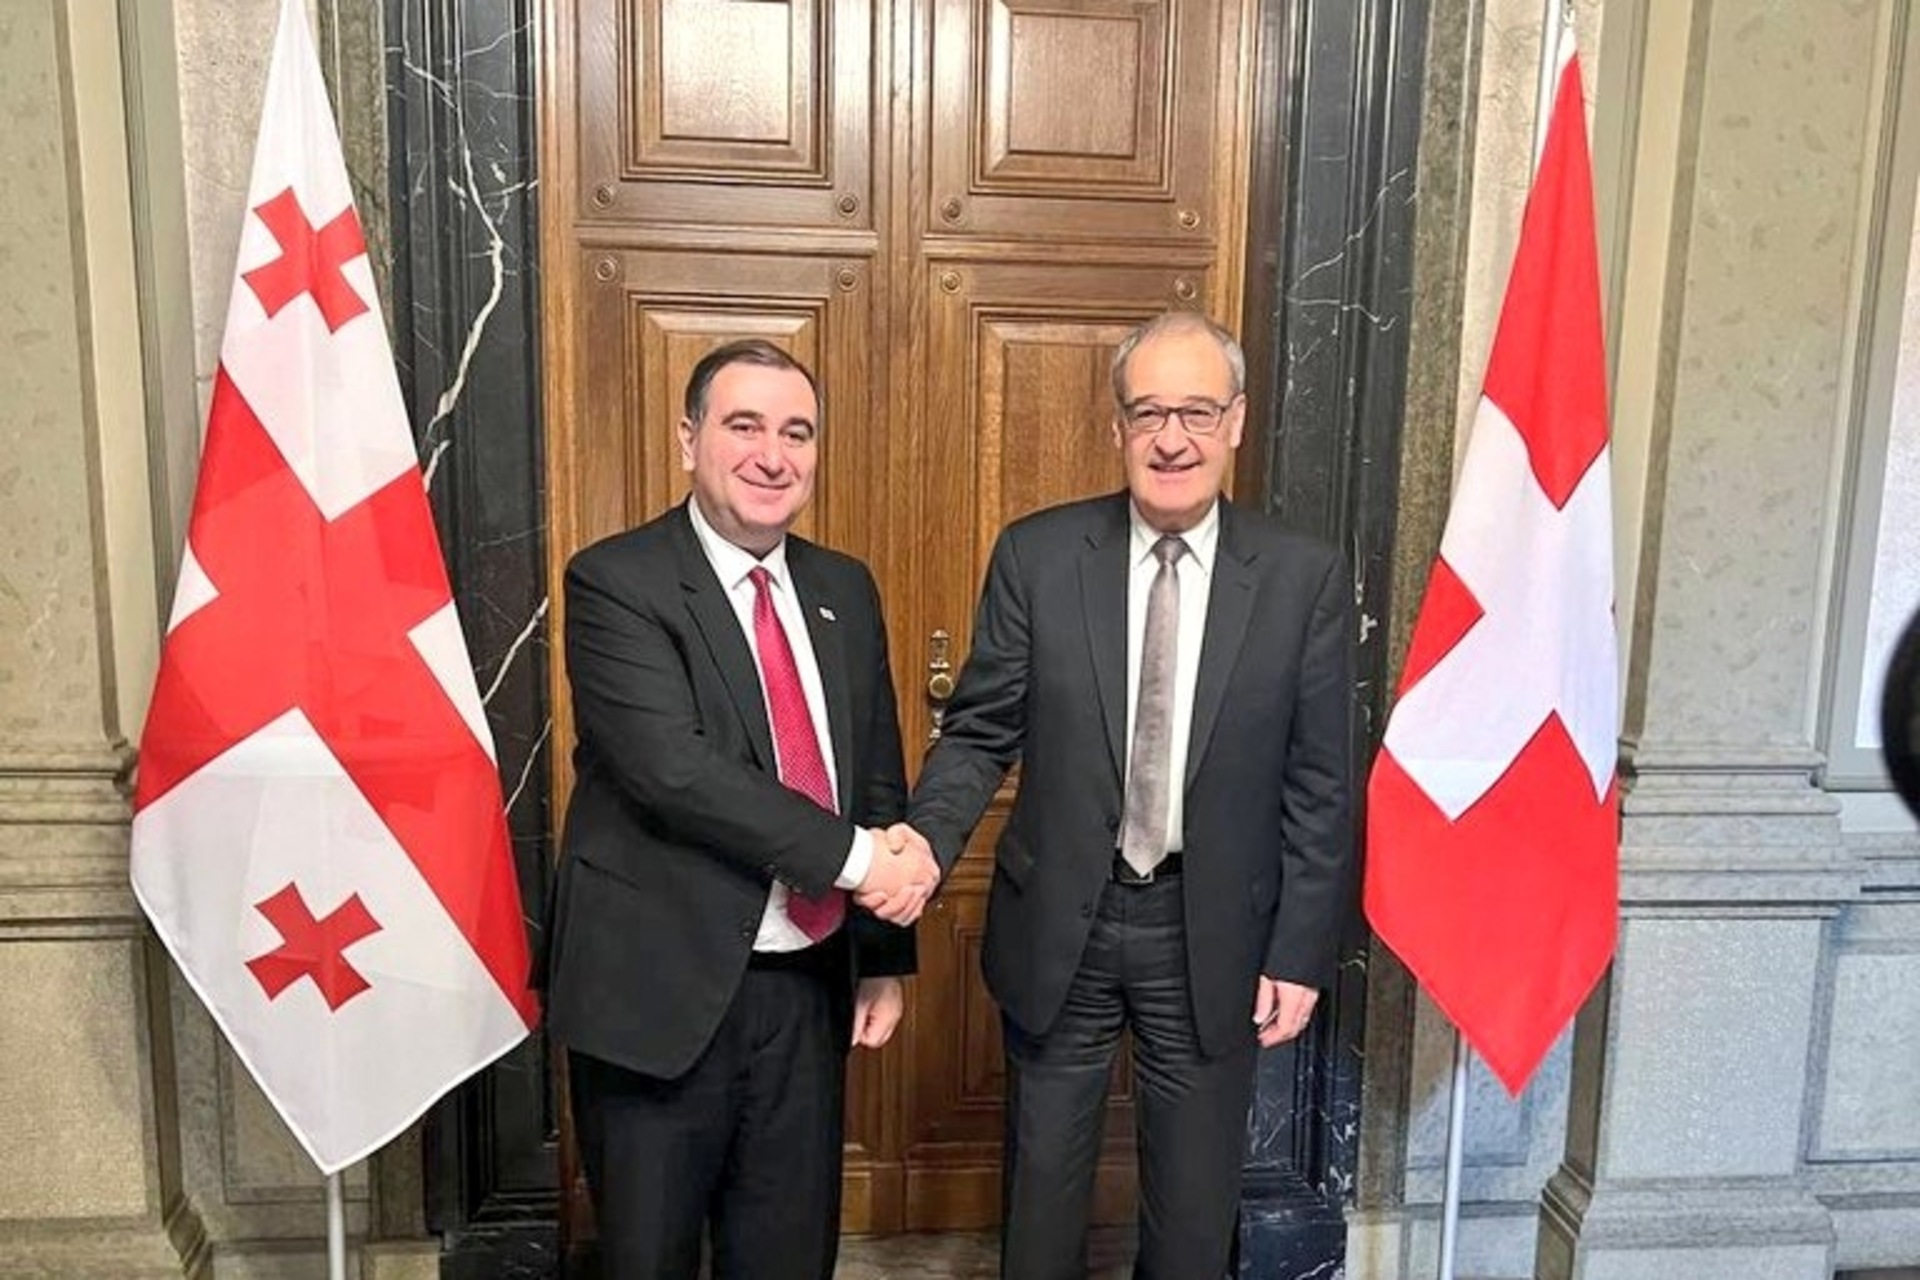 Švietimo mokslinių tyrimų naujovės: Šveicarijos federalinis tarybos narys Guy'us Parmelinas ir Gruzijos ministras Michailas Chkhenkeli